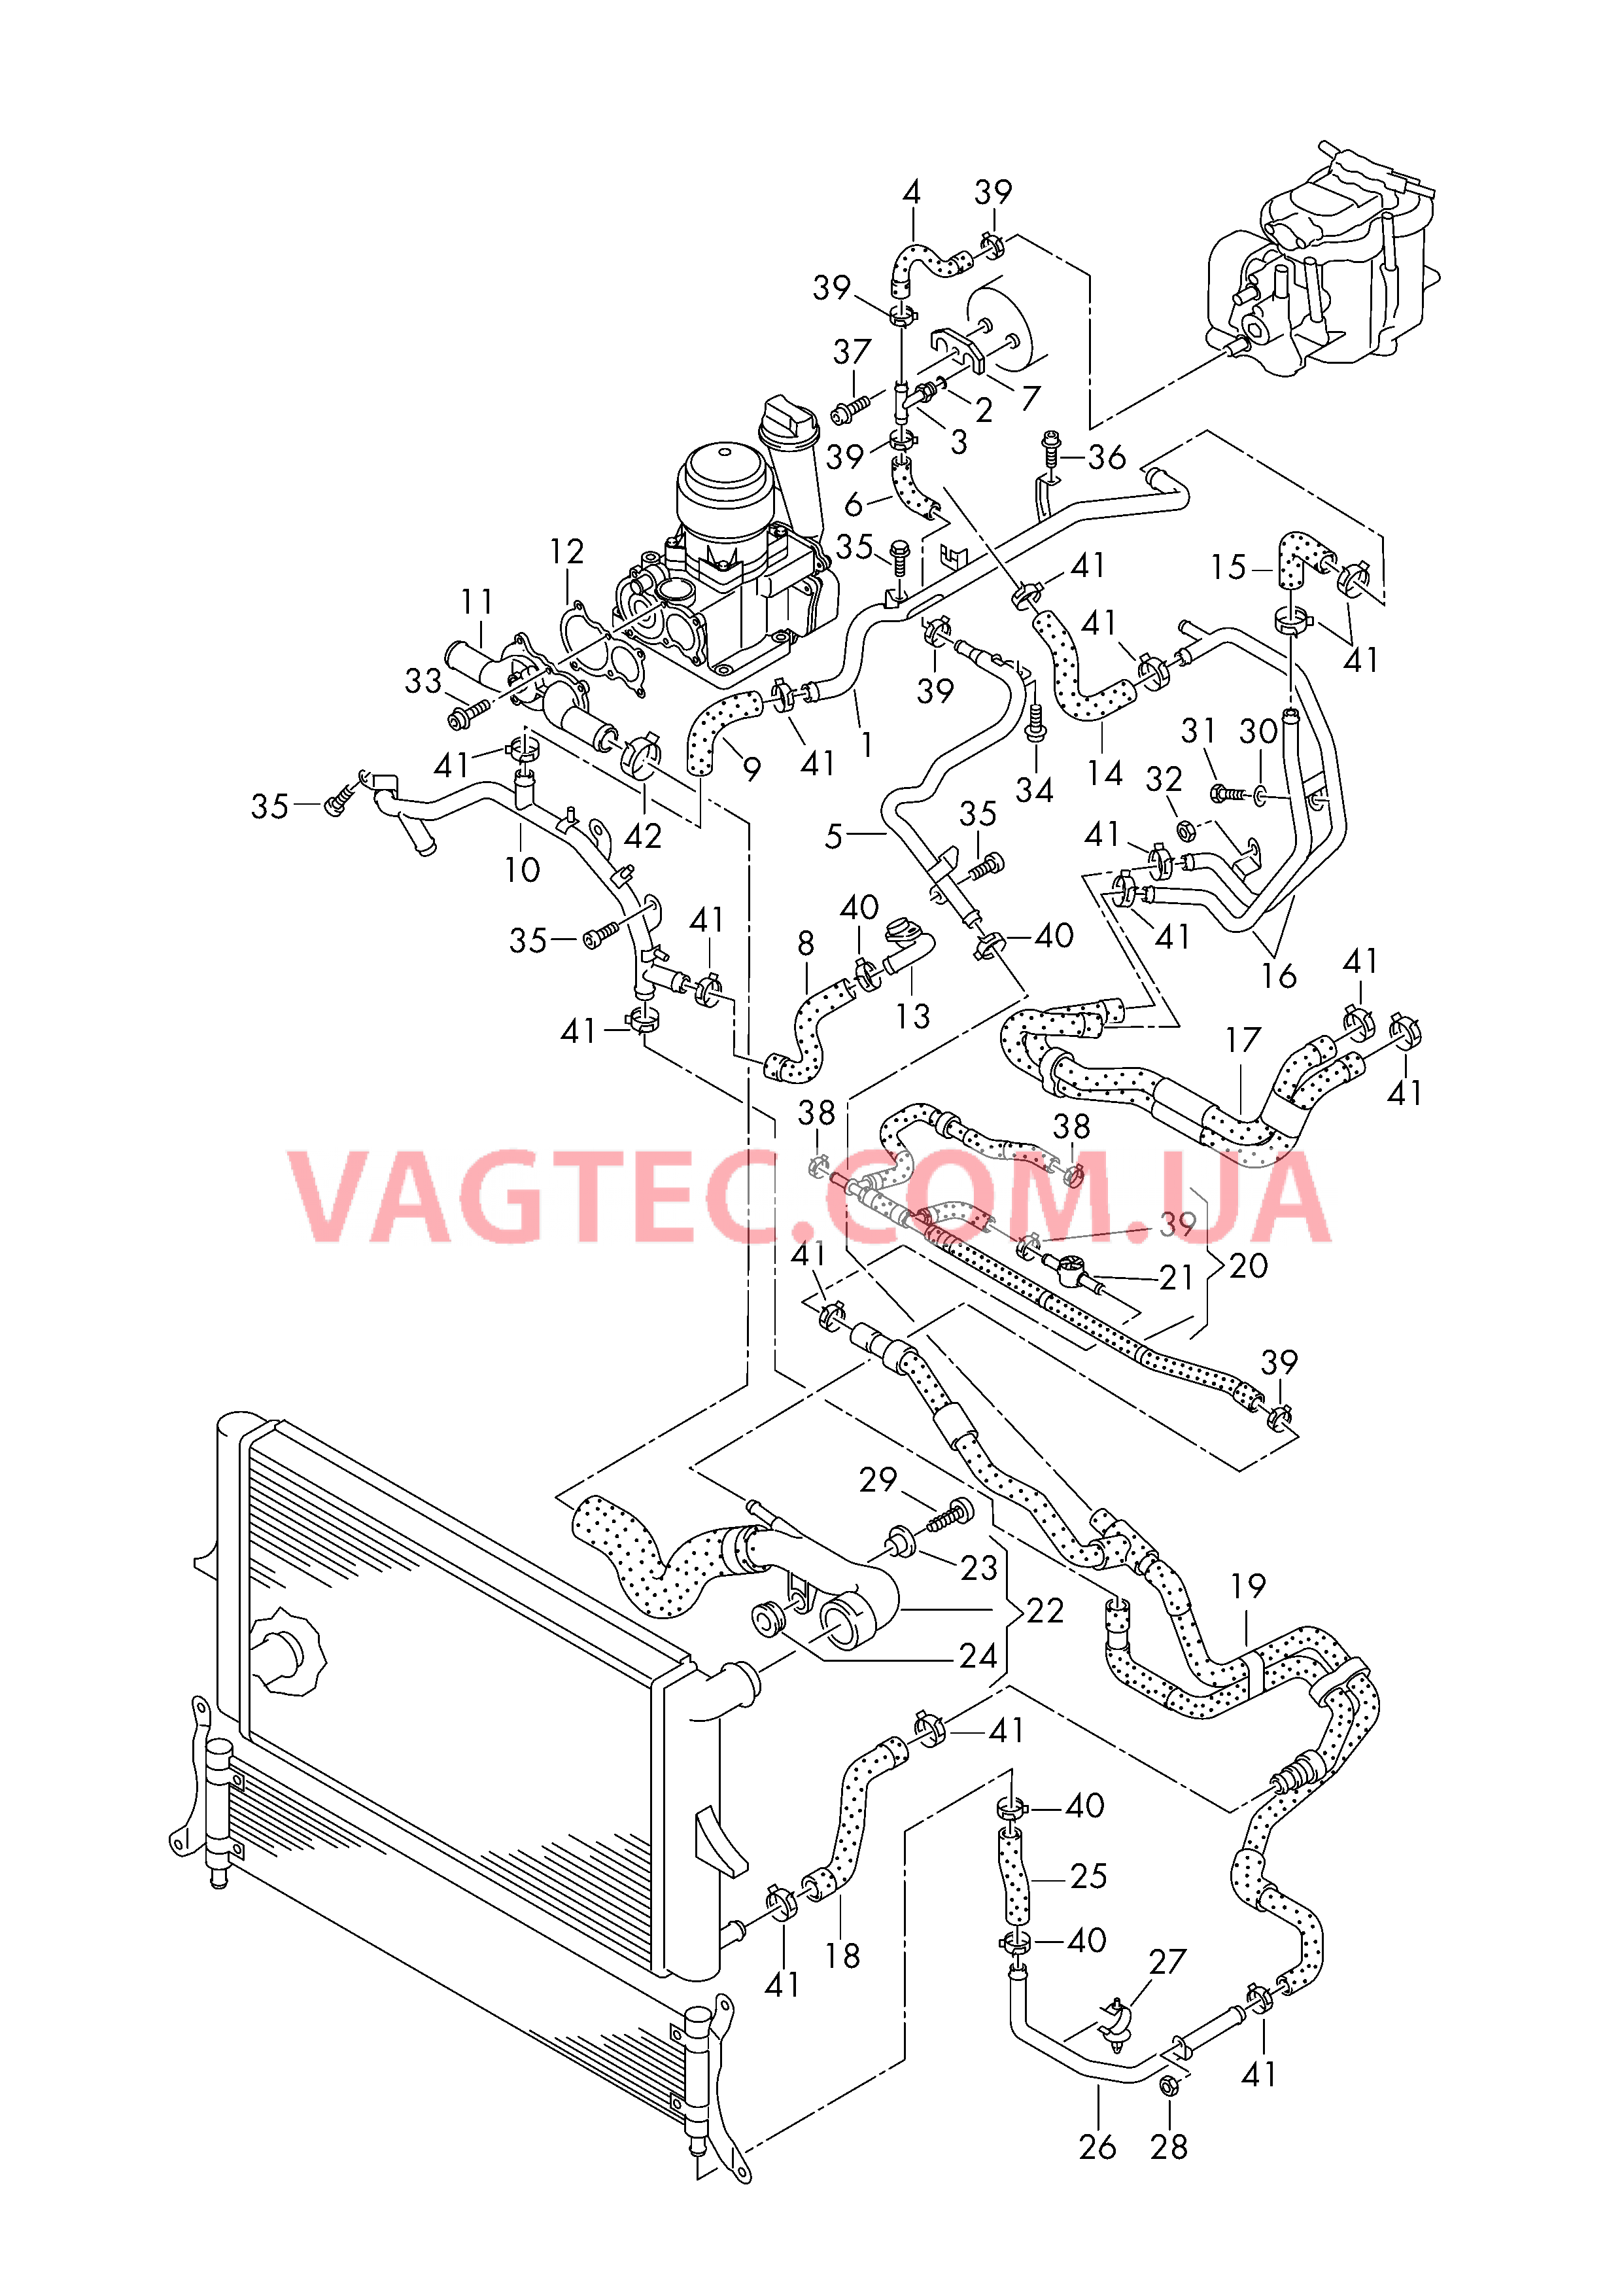 Жидкостное охлаждение для VW TOUAREG  Патрубок ОЖ с трубкой удаления воздуха для VW TOUAREG    см. панель иллюстраций:  для VOLKSWAGEN Touareg 2003